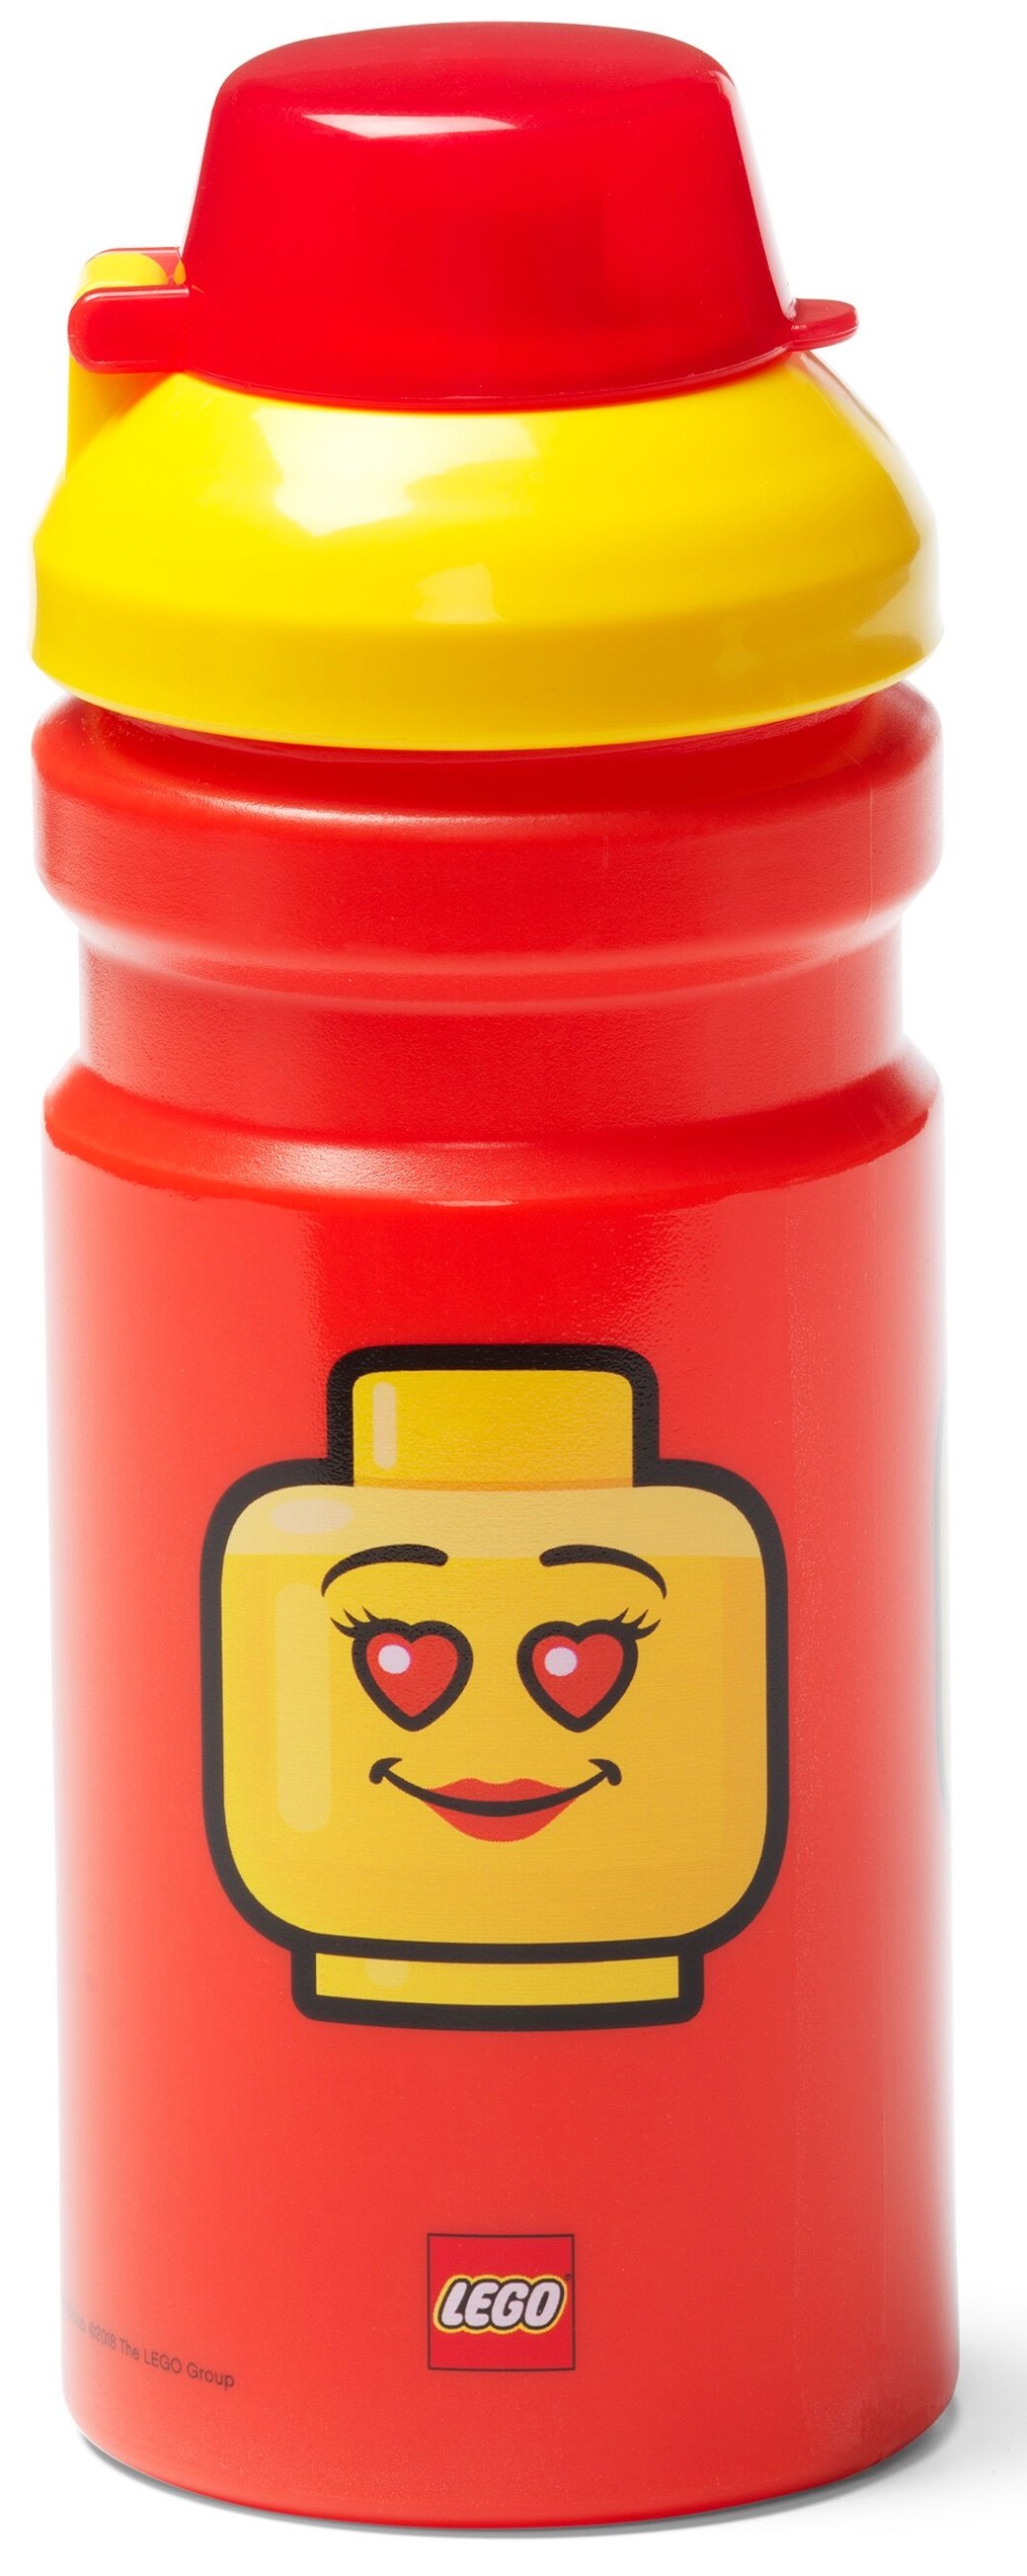 LEGO® Drinkbeker Kopen? Leuke Fles Cookinglife!